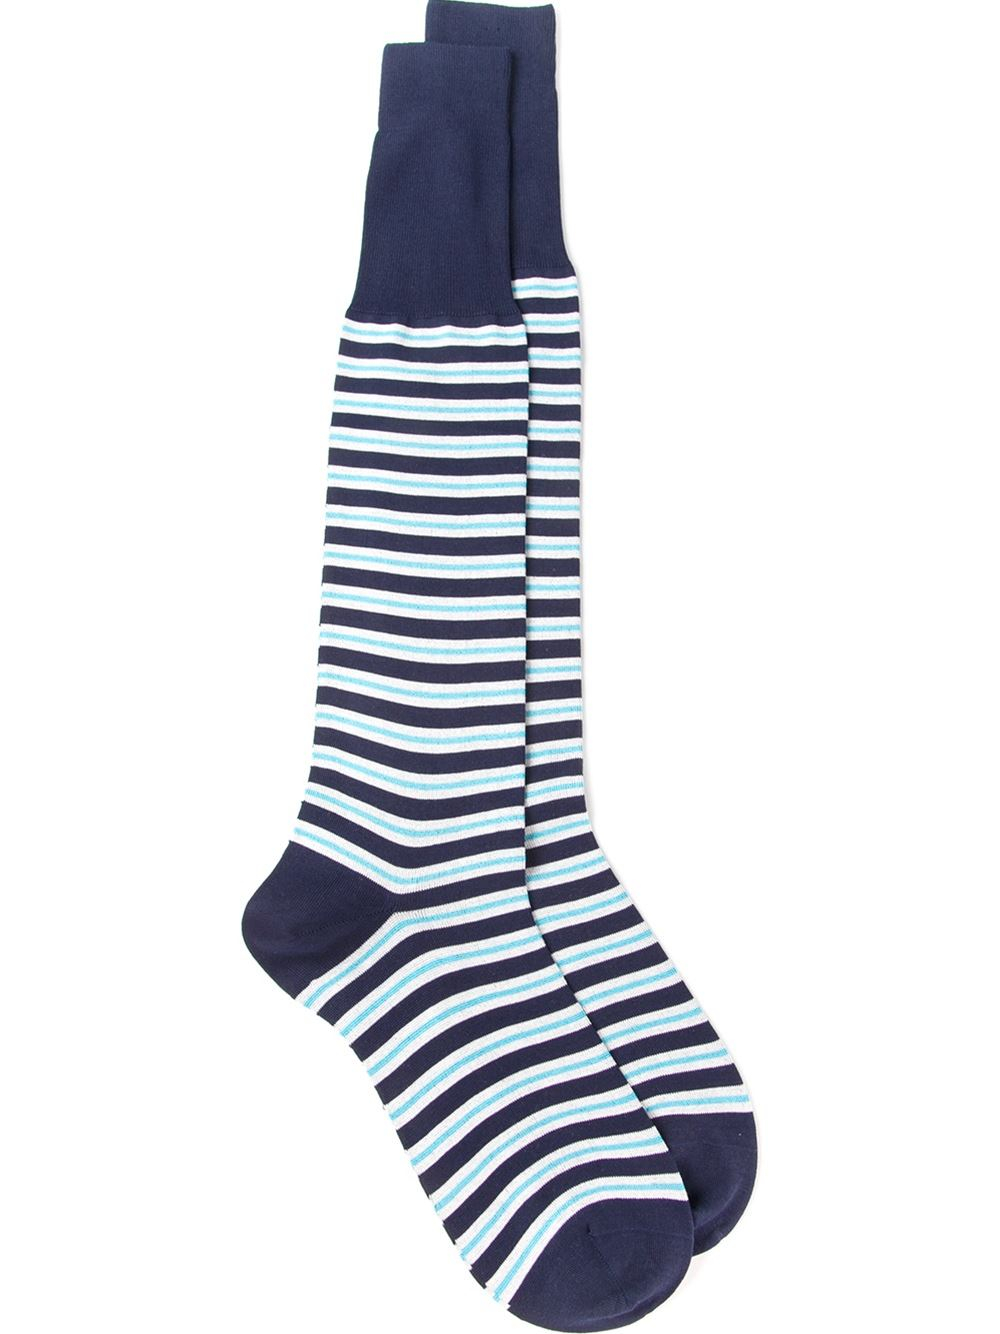 Lyst - Canali Long Striped Socks in Blue for Men